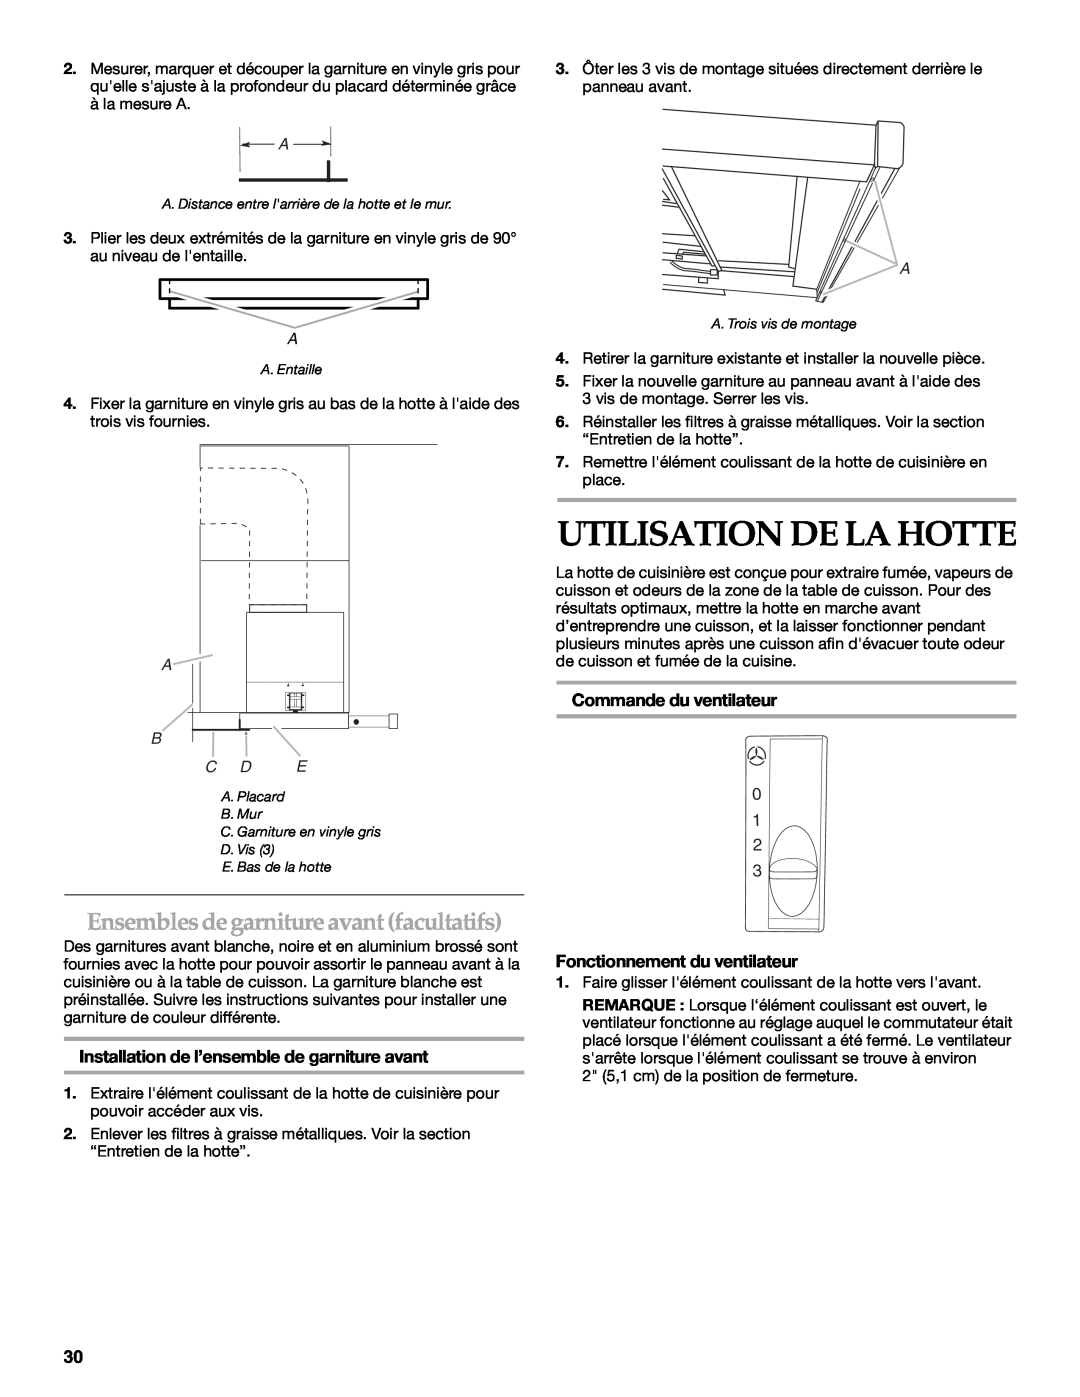 KitchenAid W10267109C Utilisation De La Hotte, Ensembles degarniture avant facultatifs, Commande du ventilateur 